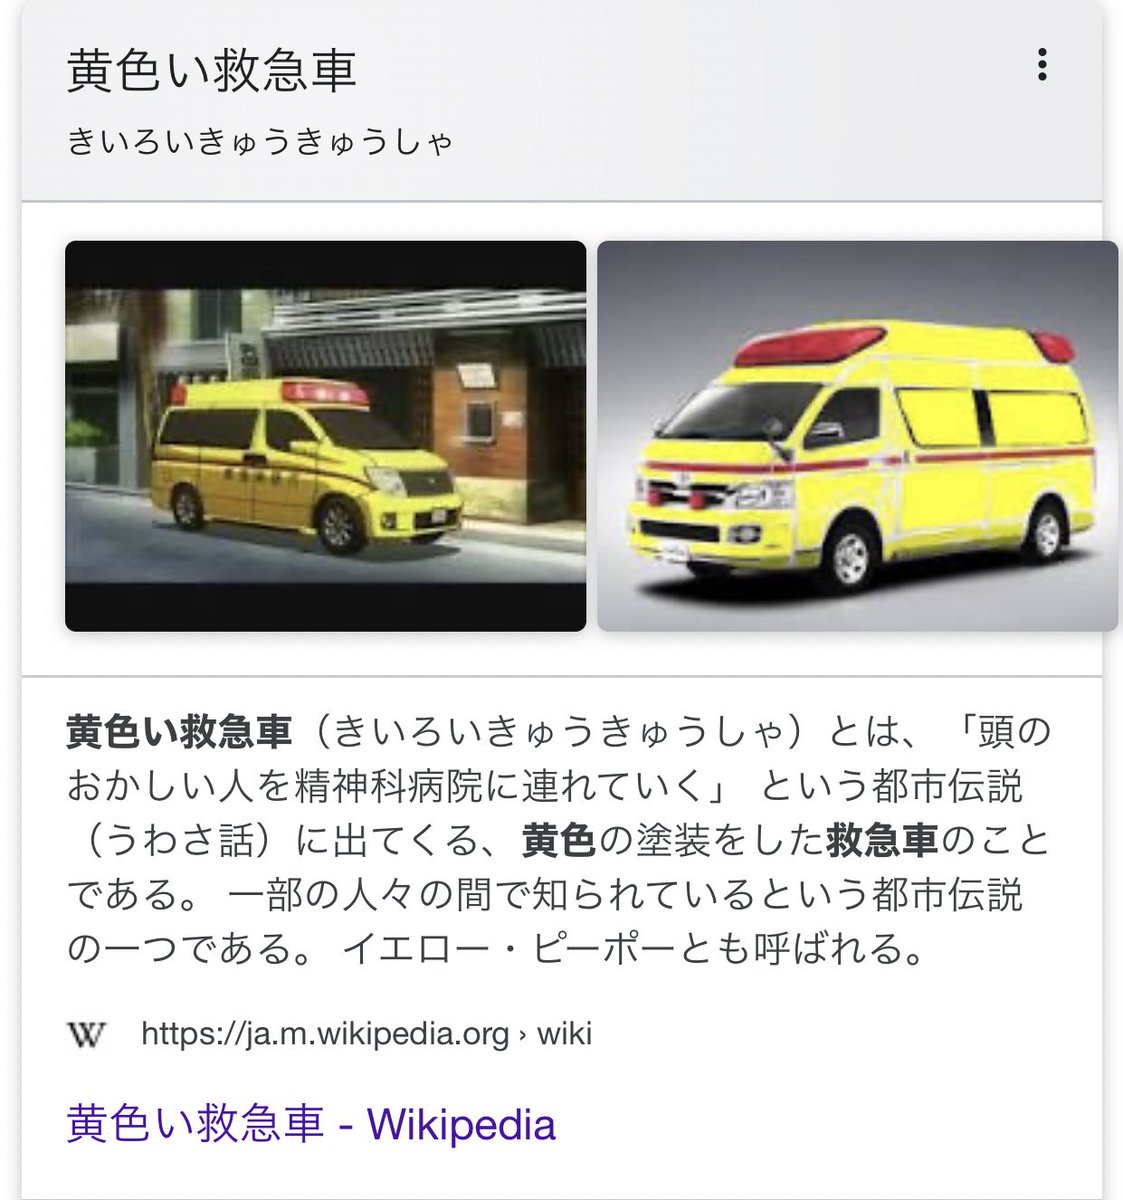 Twitter पर 黄色の車といえば ワイ 精神患者用救急車